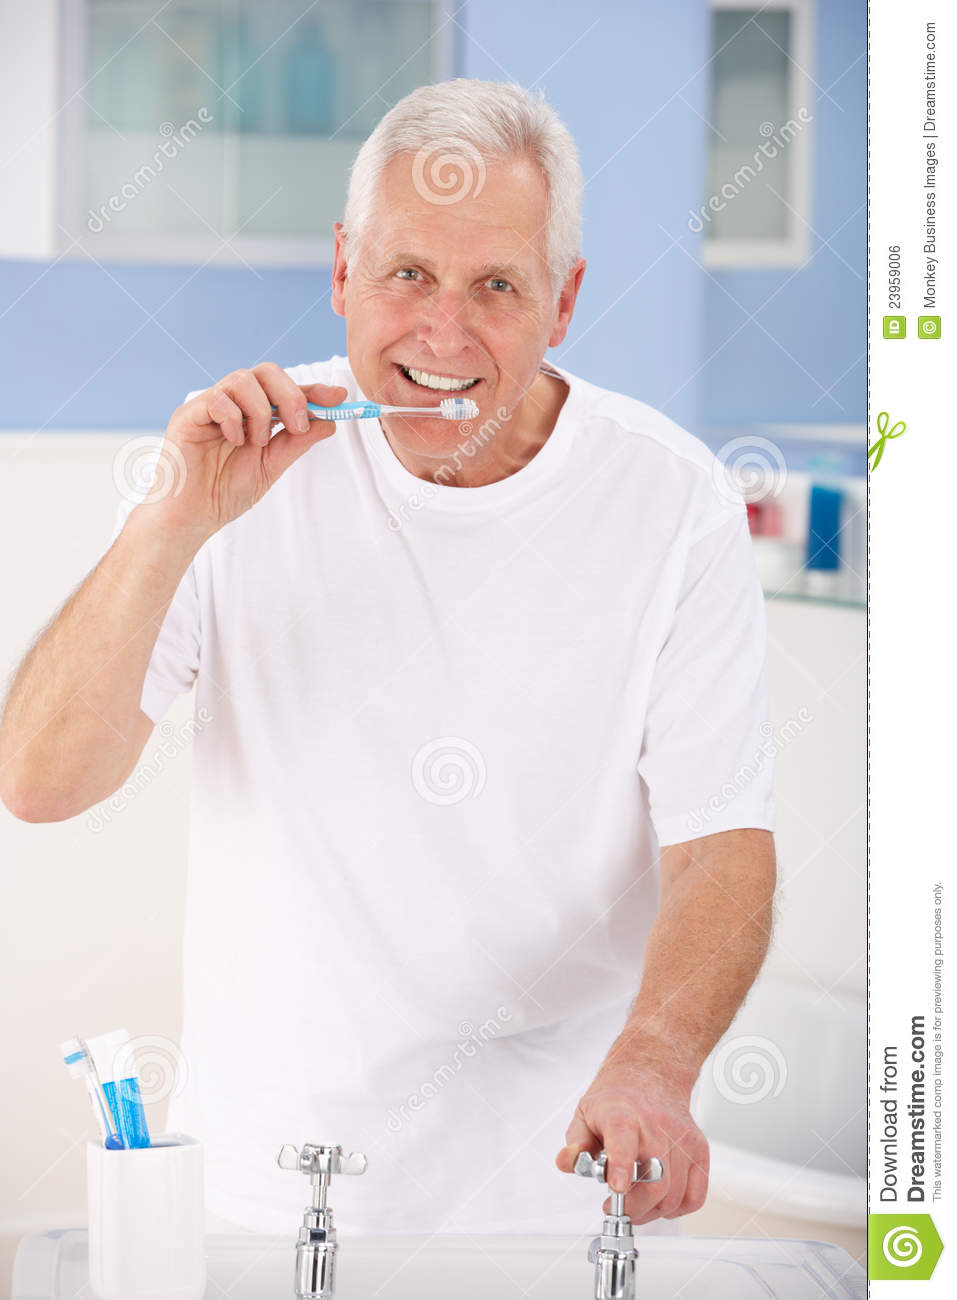 Senior Man Brushing Teeth Royalty Free Stock Image   Image  23959006